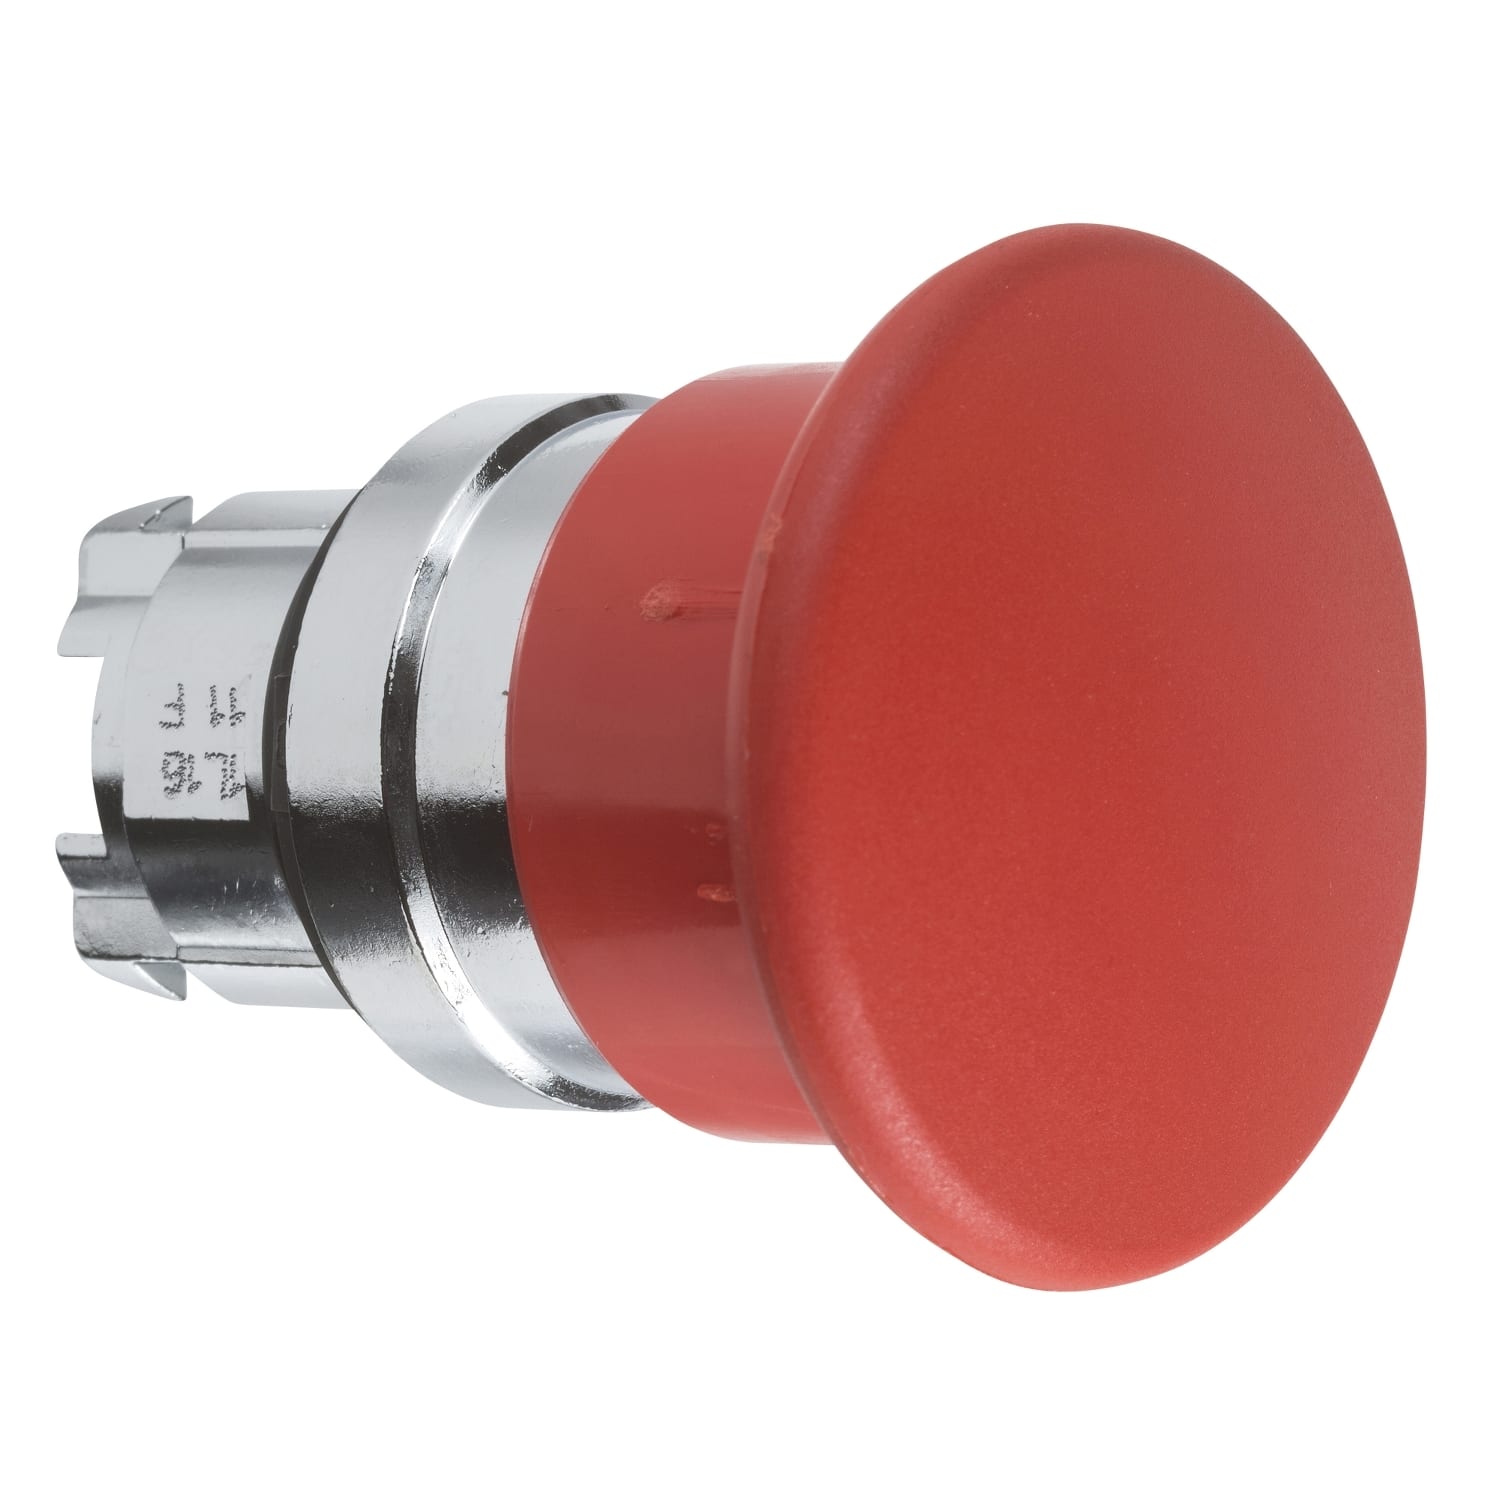 Schneider Electric - Harmony tete de coup de poing D 40 mm - D22 - rouge